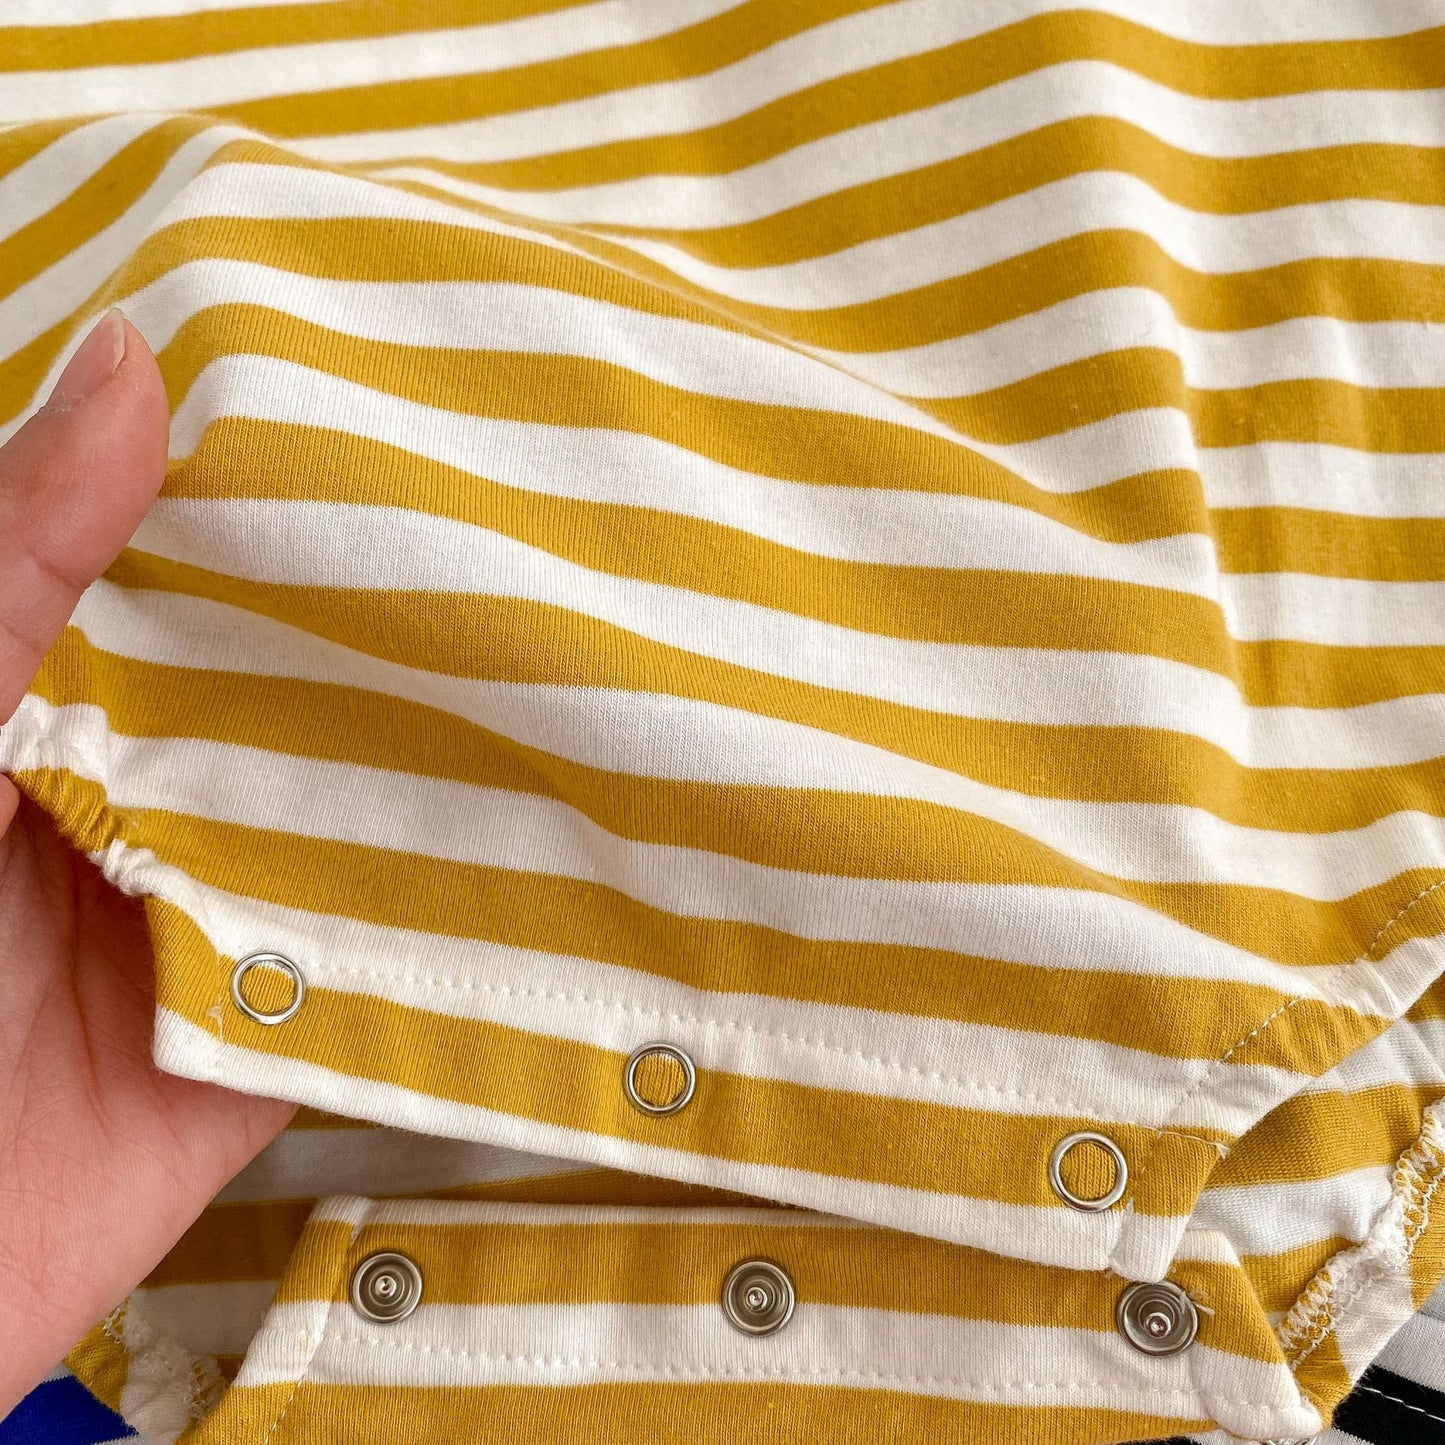 【k3223】ins新款嬰兒衣服韓版男寶寶拼色條紋三角哈衣棉質圓領爬服包屁衣